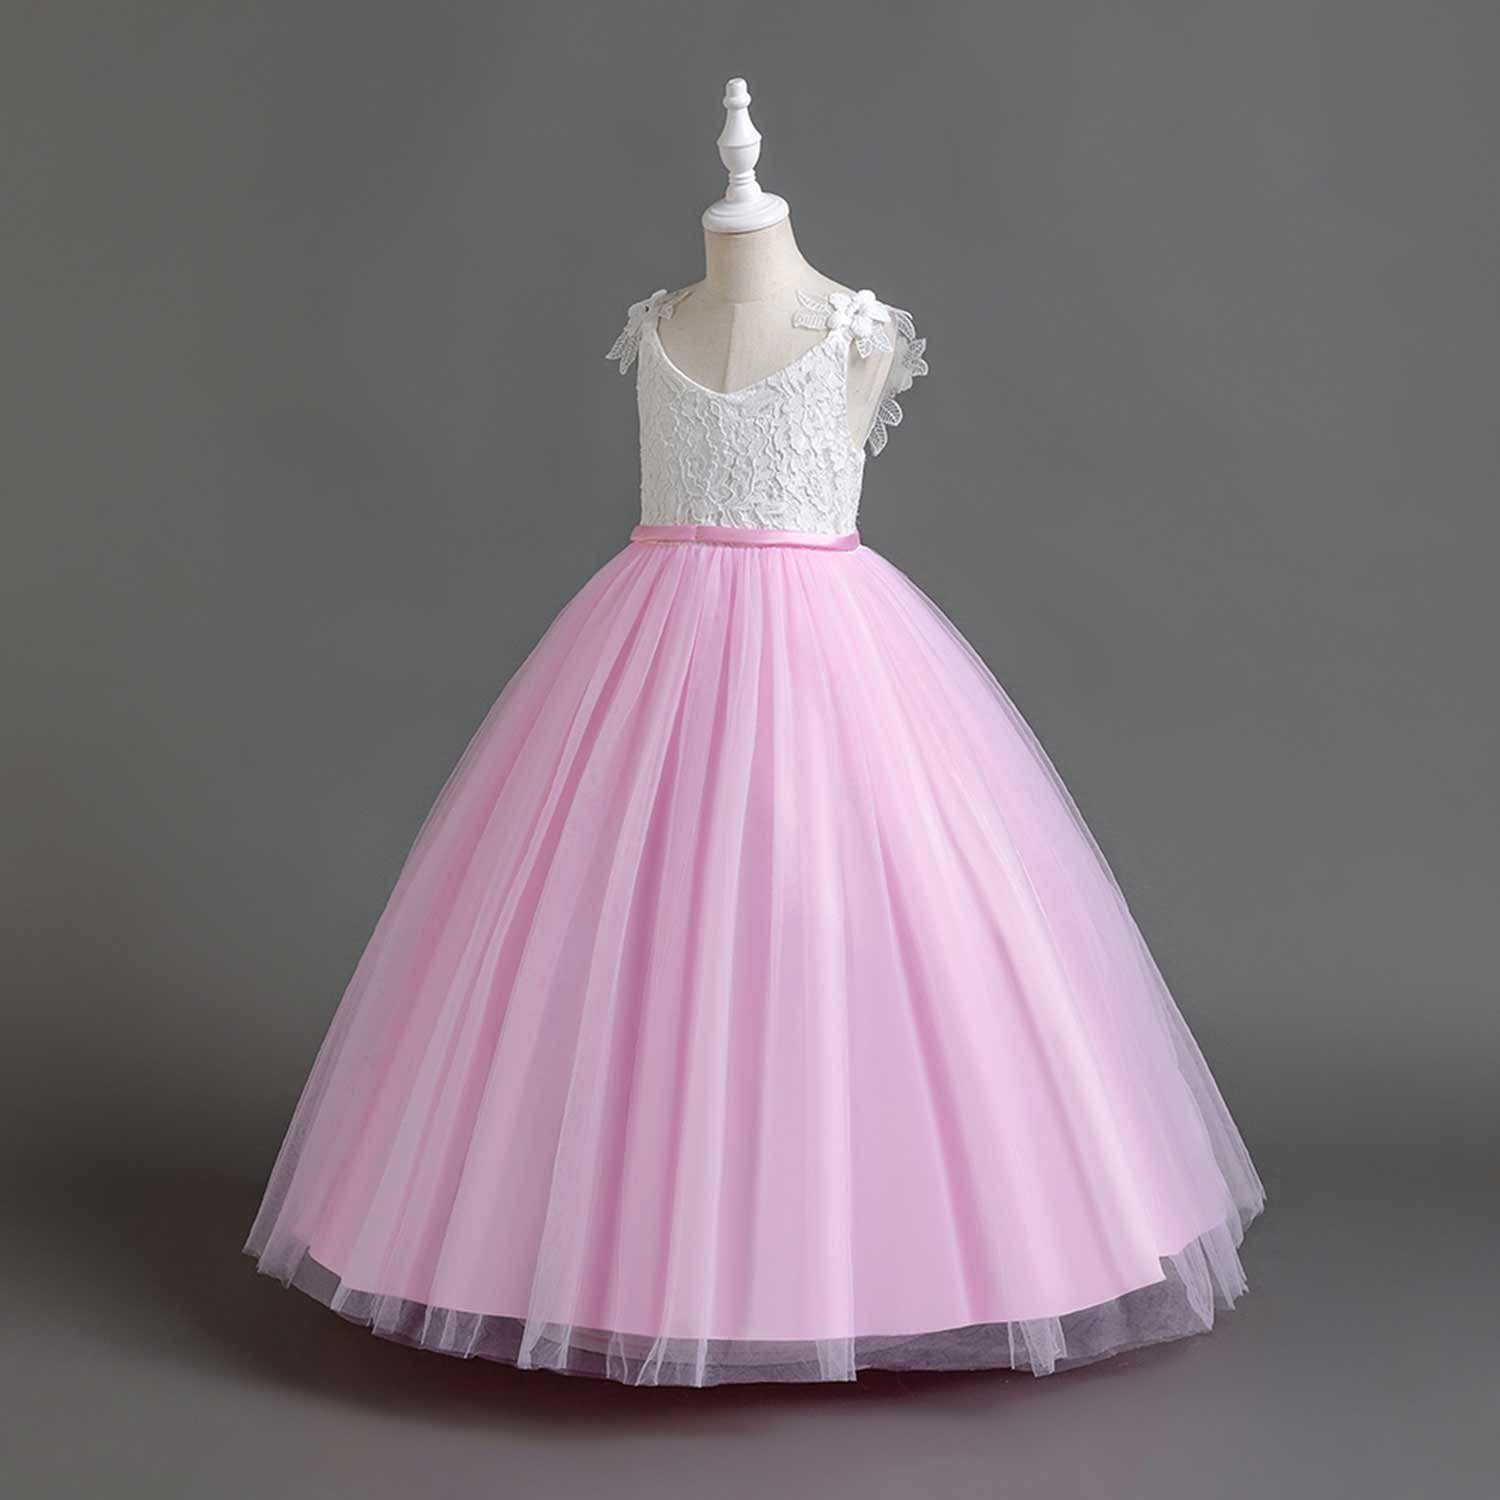 Daisred Abendkleid Prinzessinnenkleider Abendkleider Blumenmädchen Rosa Tüllkleider